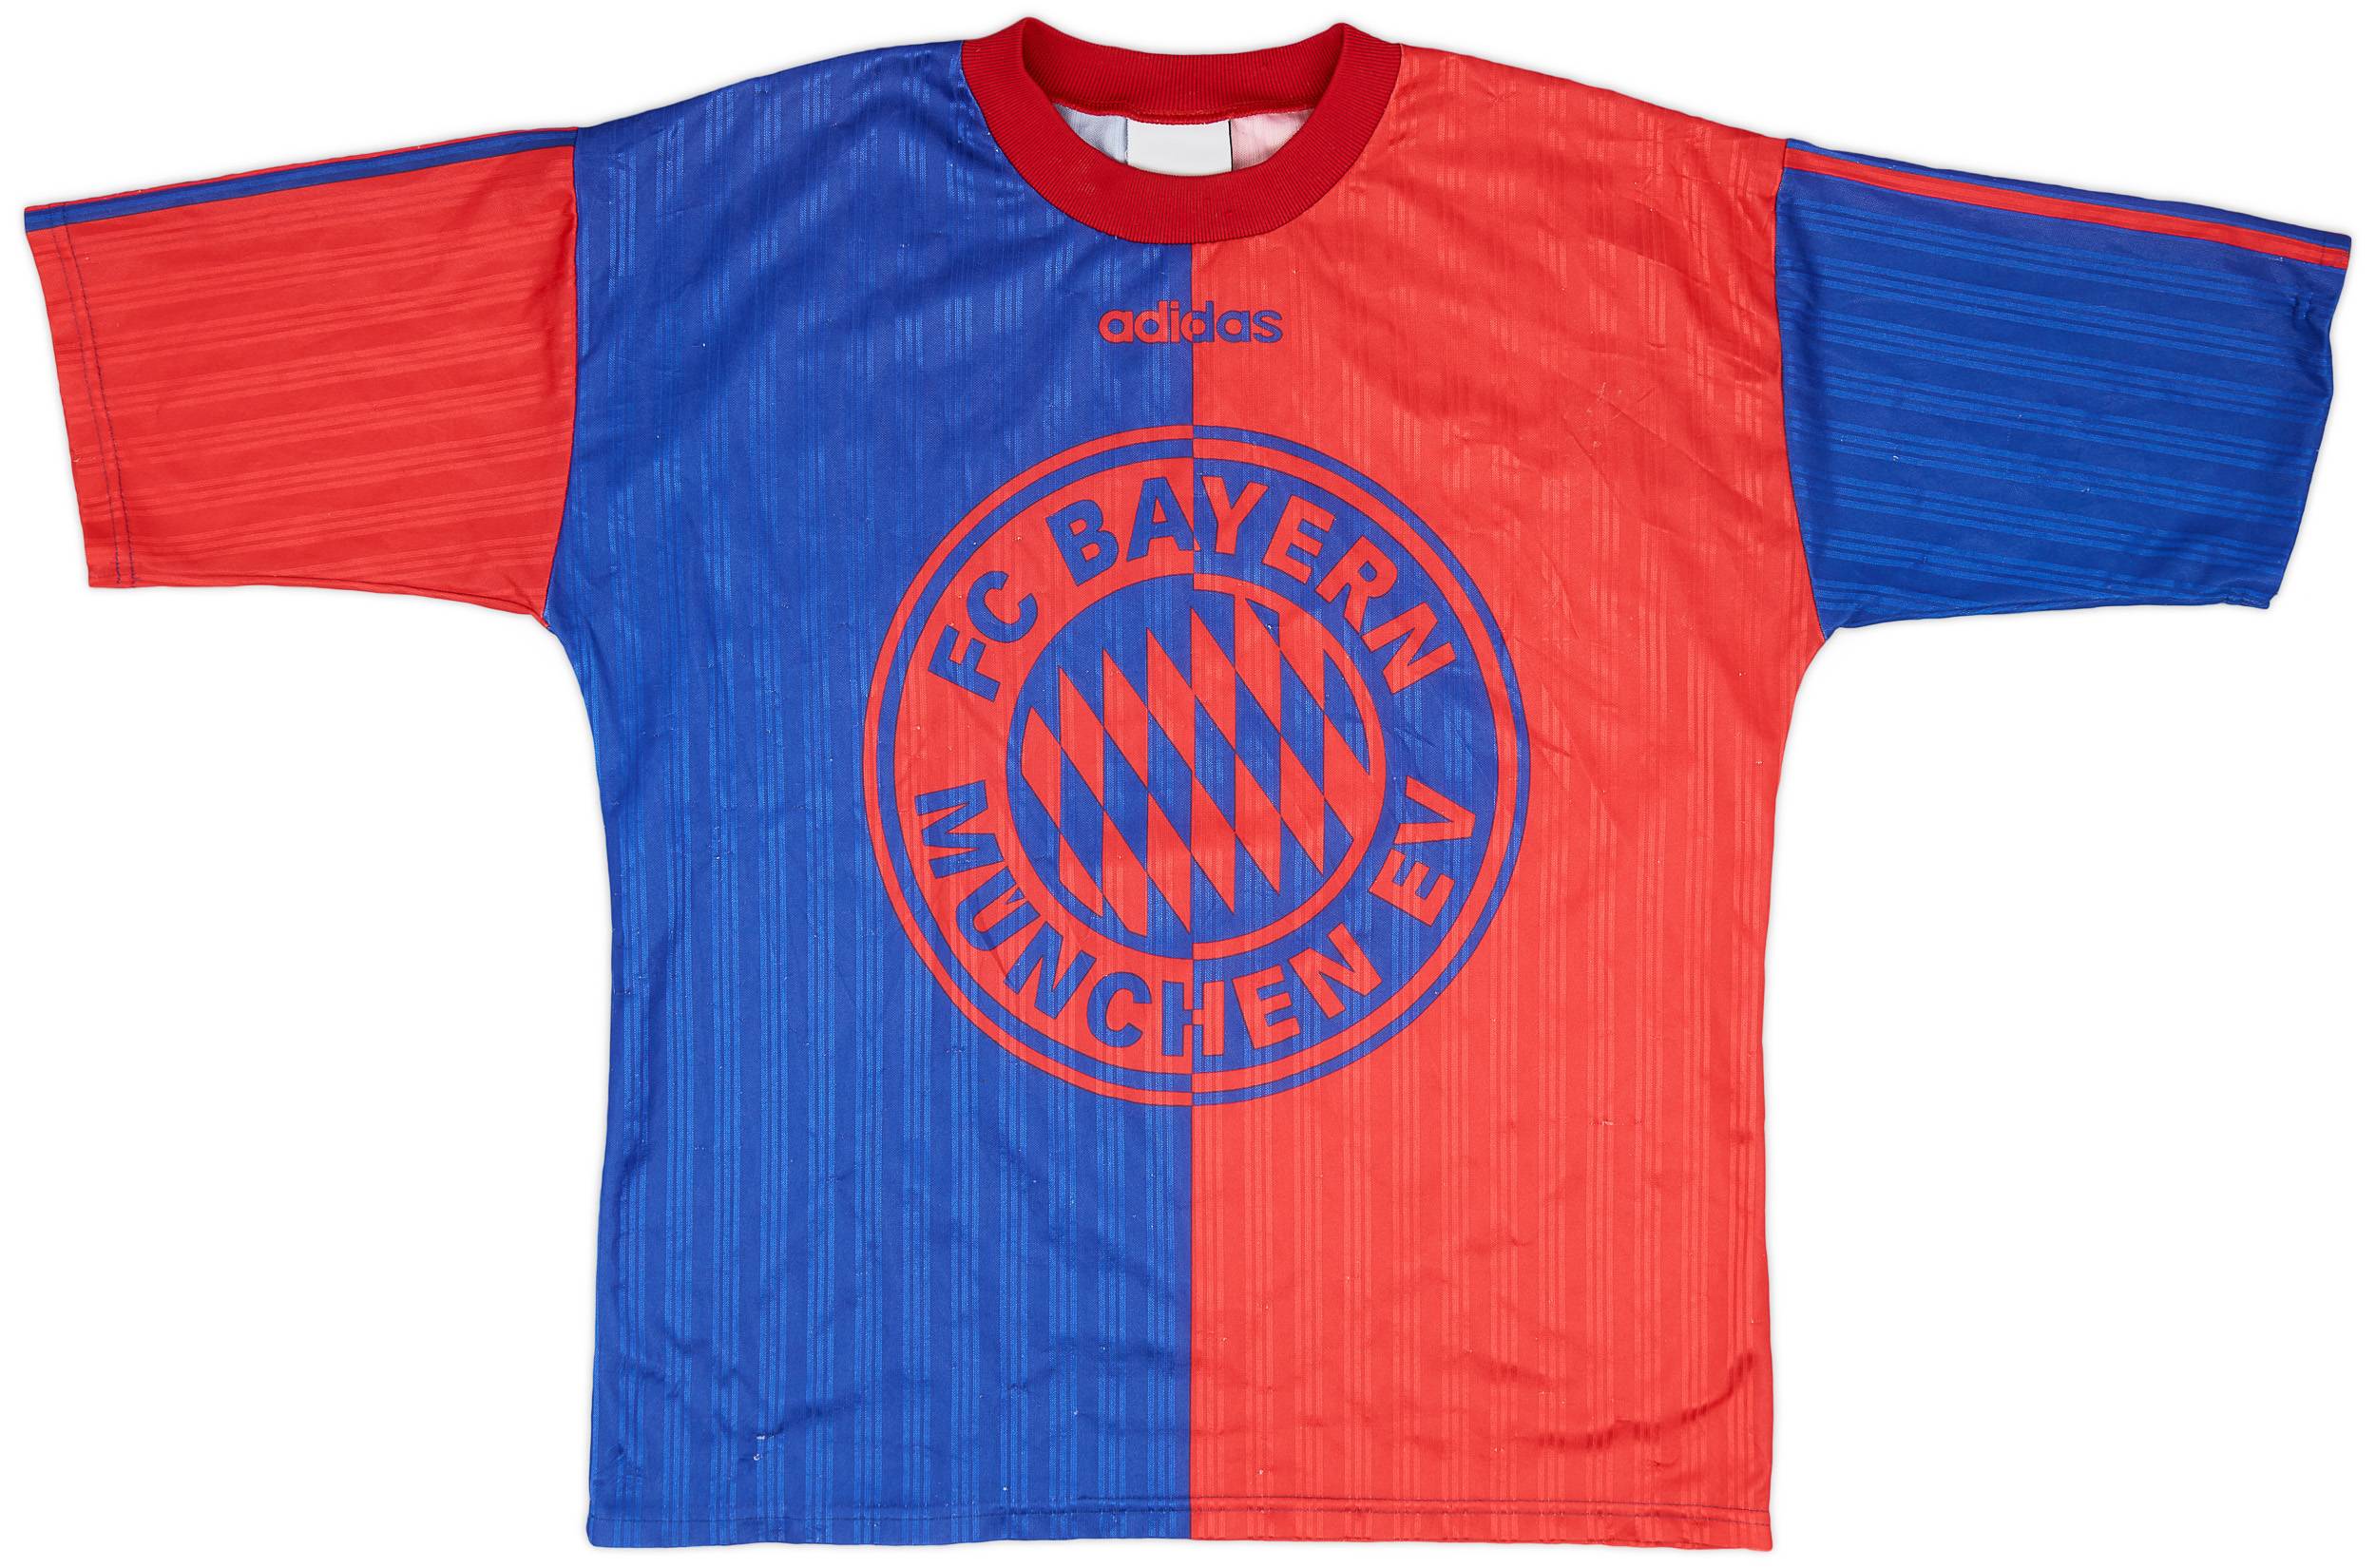 1995-96 Bayern Munich adidas Training Shirt - 8/10 - (M)